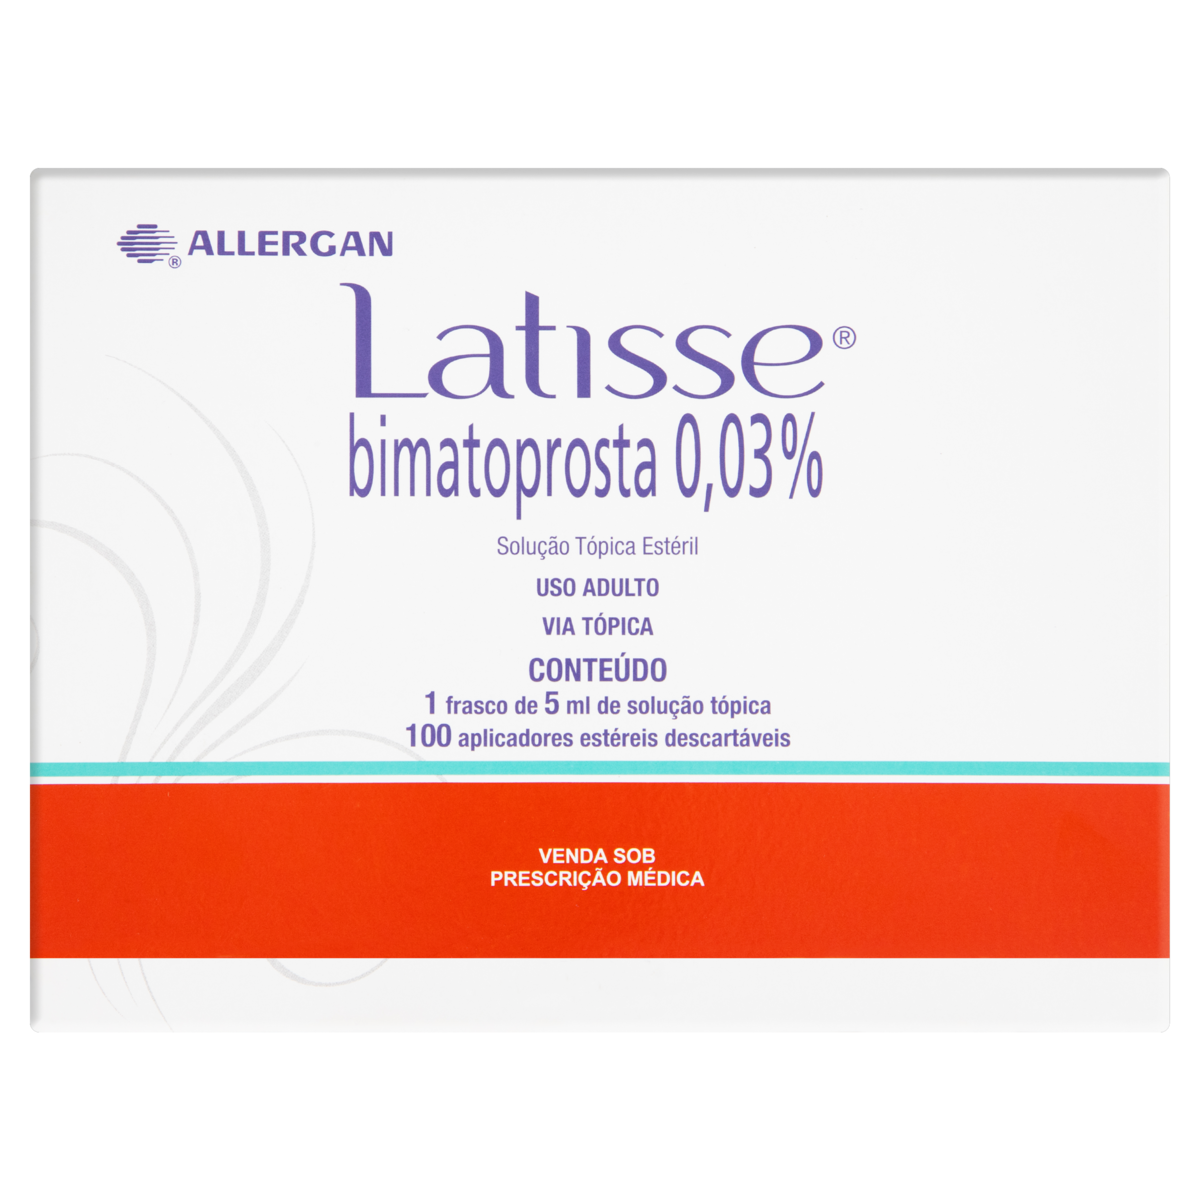 latisse-allergan-caixa-5ml-100-aplicadores-gtin-ean-upc